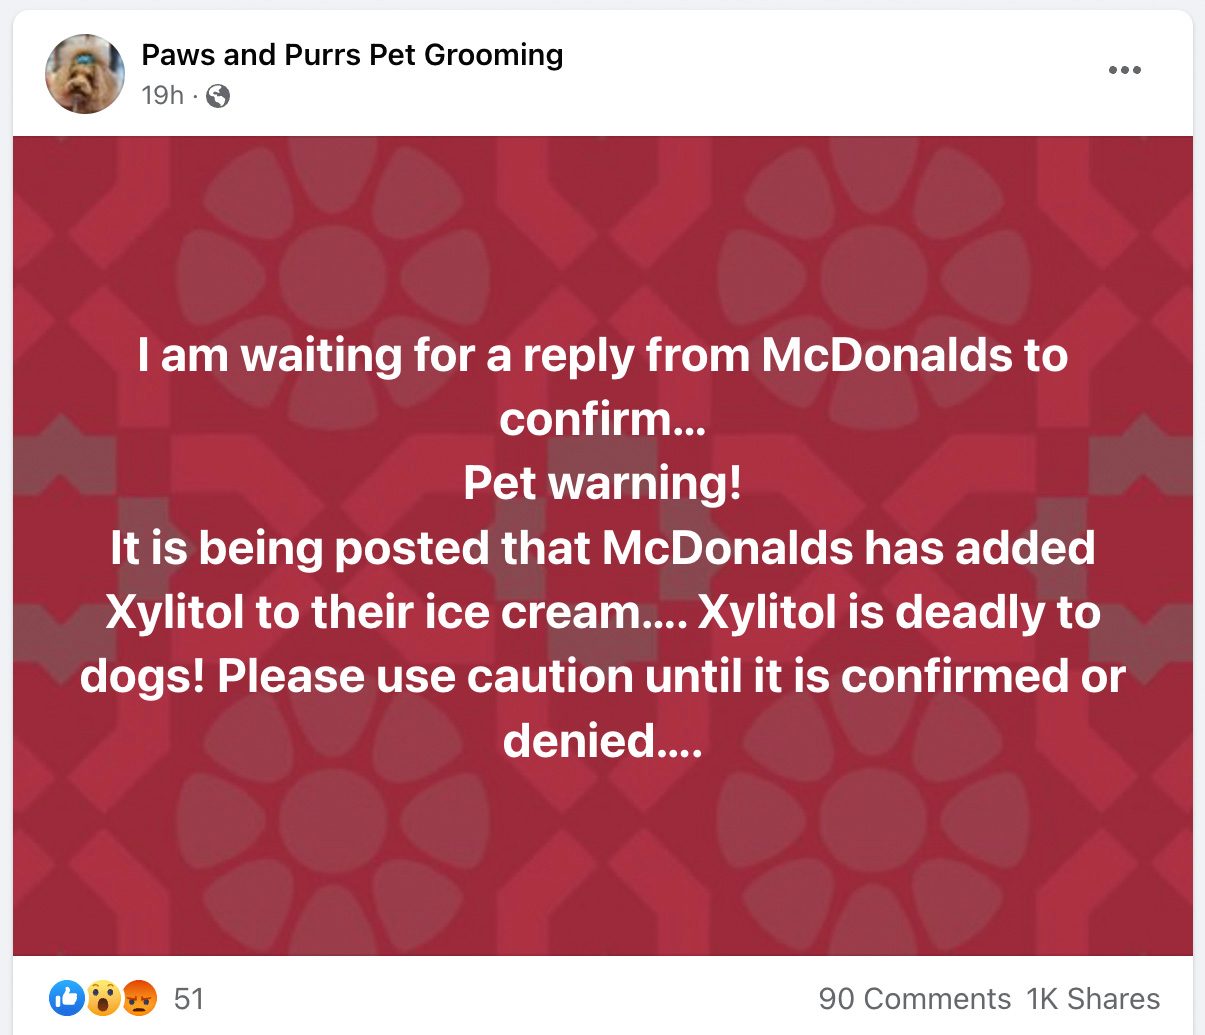 Una publicación de Facebook afirmó que el helado de McDonald's contiene xilitol, que es un alcohol de azúcar que es tóxico y mortal para los perros.